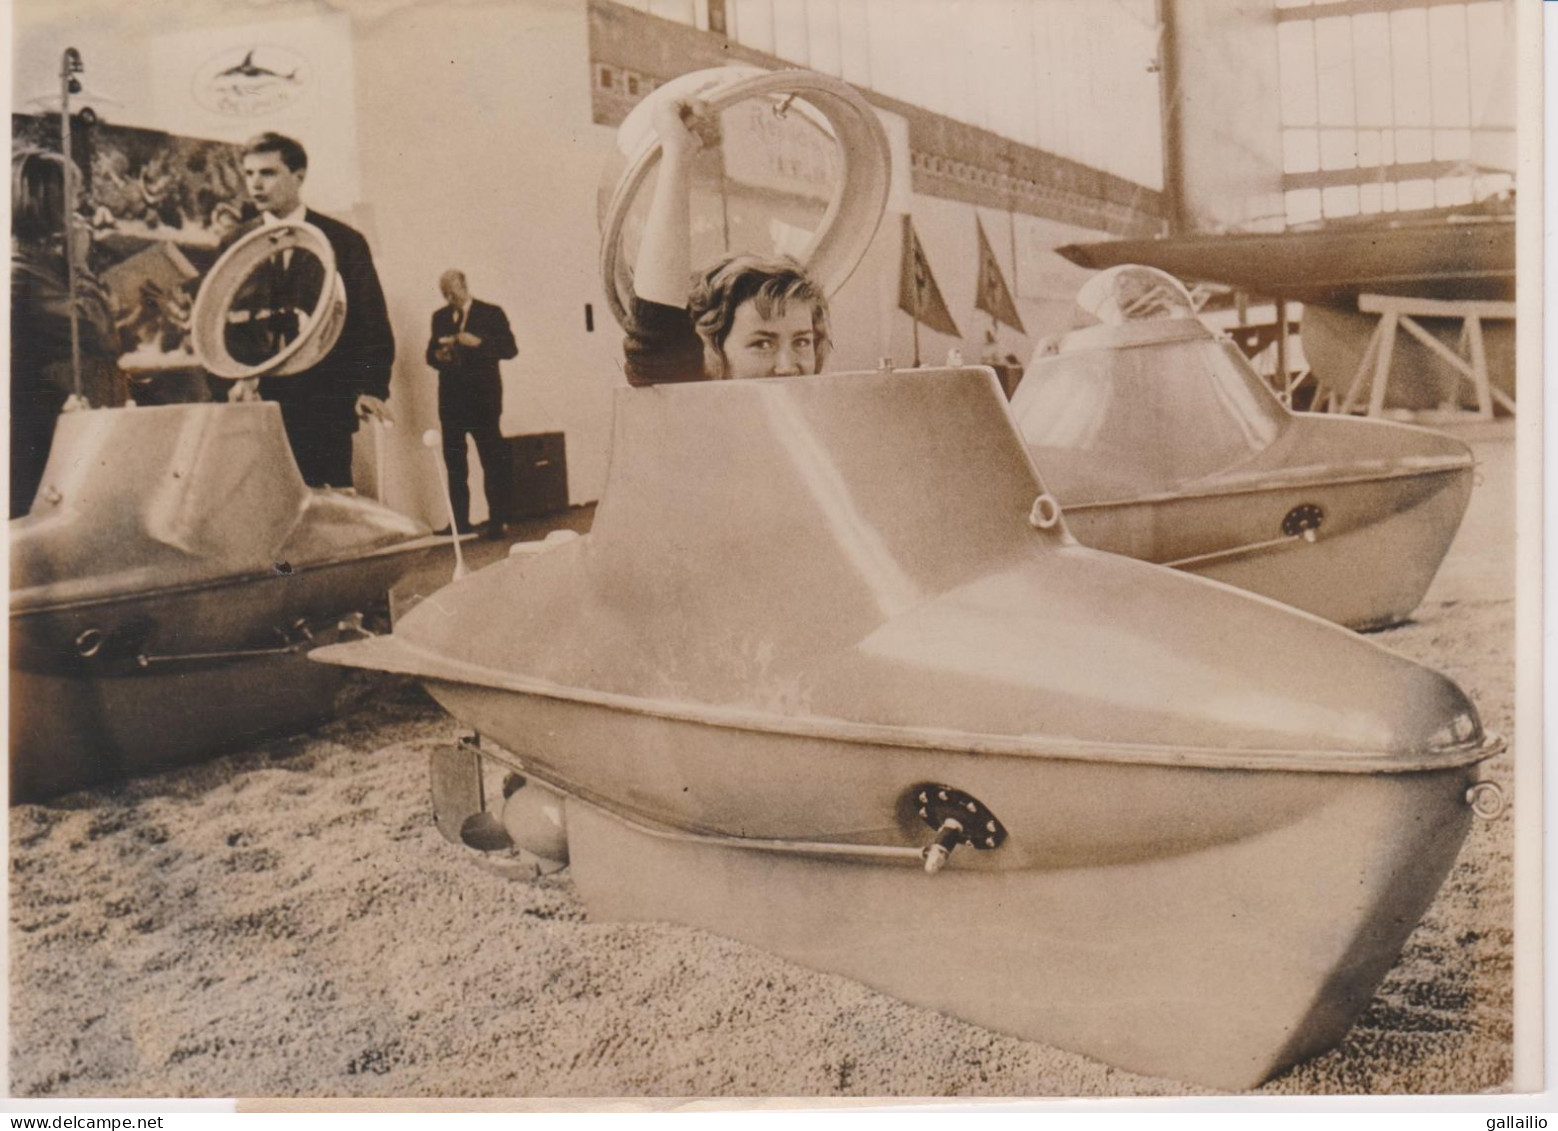 PHOTO PRESSE SOUS MARIN MONOPLACE DELPHIN E 24 AU SALON NAUTIQUE DE BERLIN MARS 1963 FORMAT 18 X 13   CMS - Schiffe